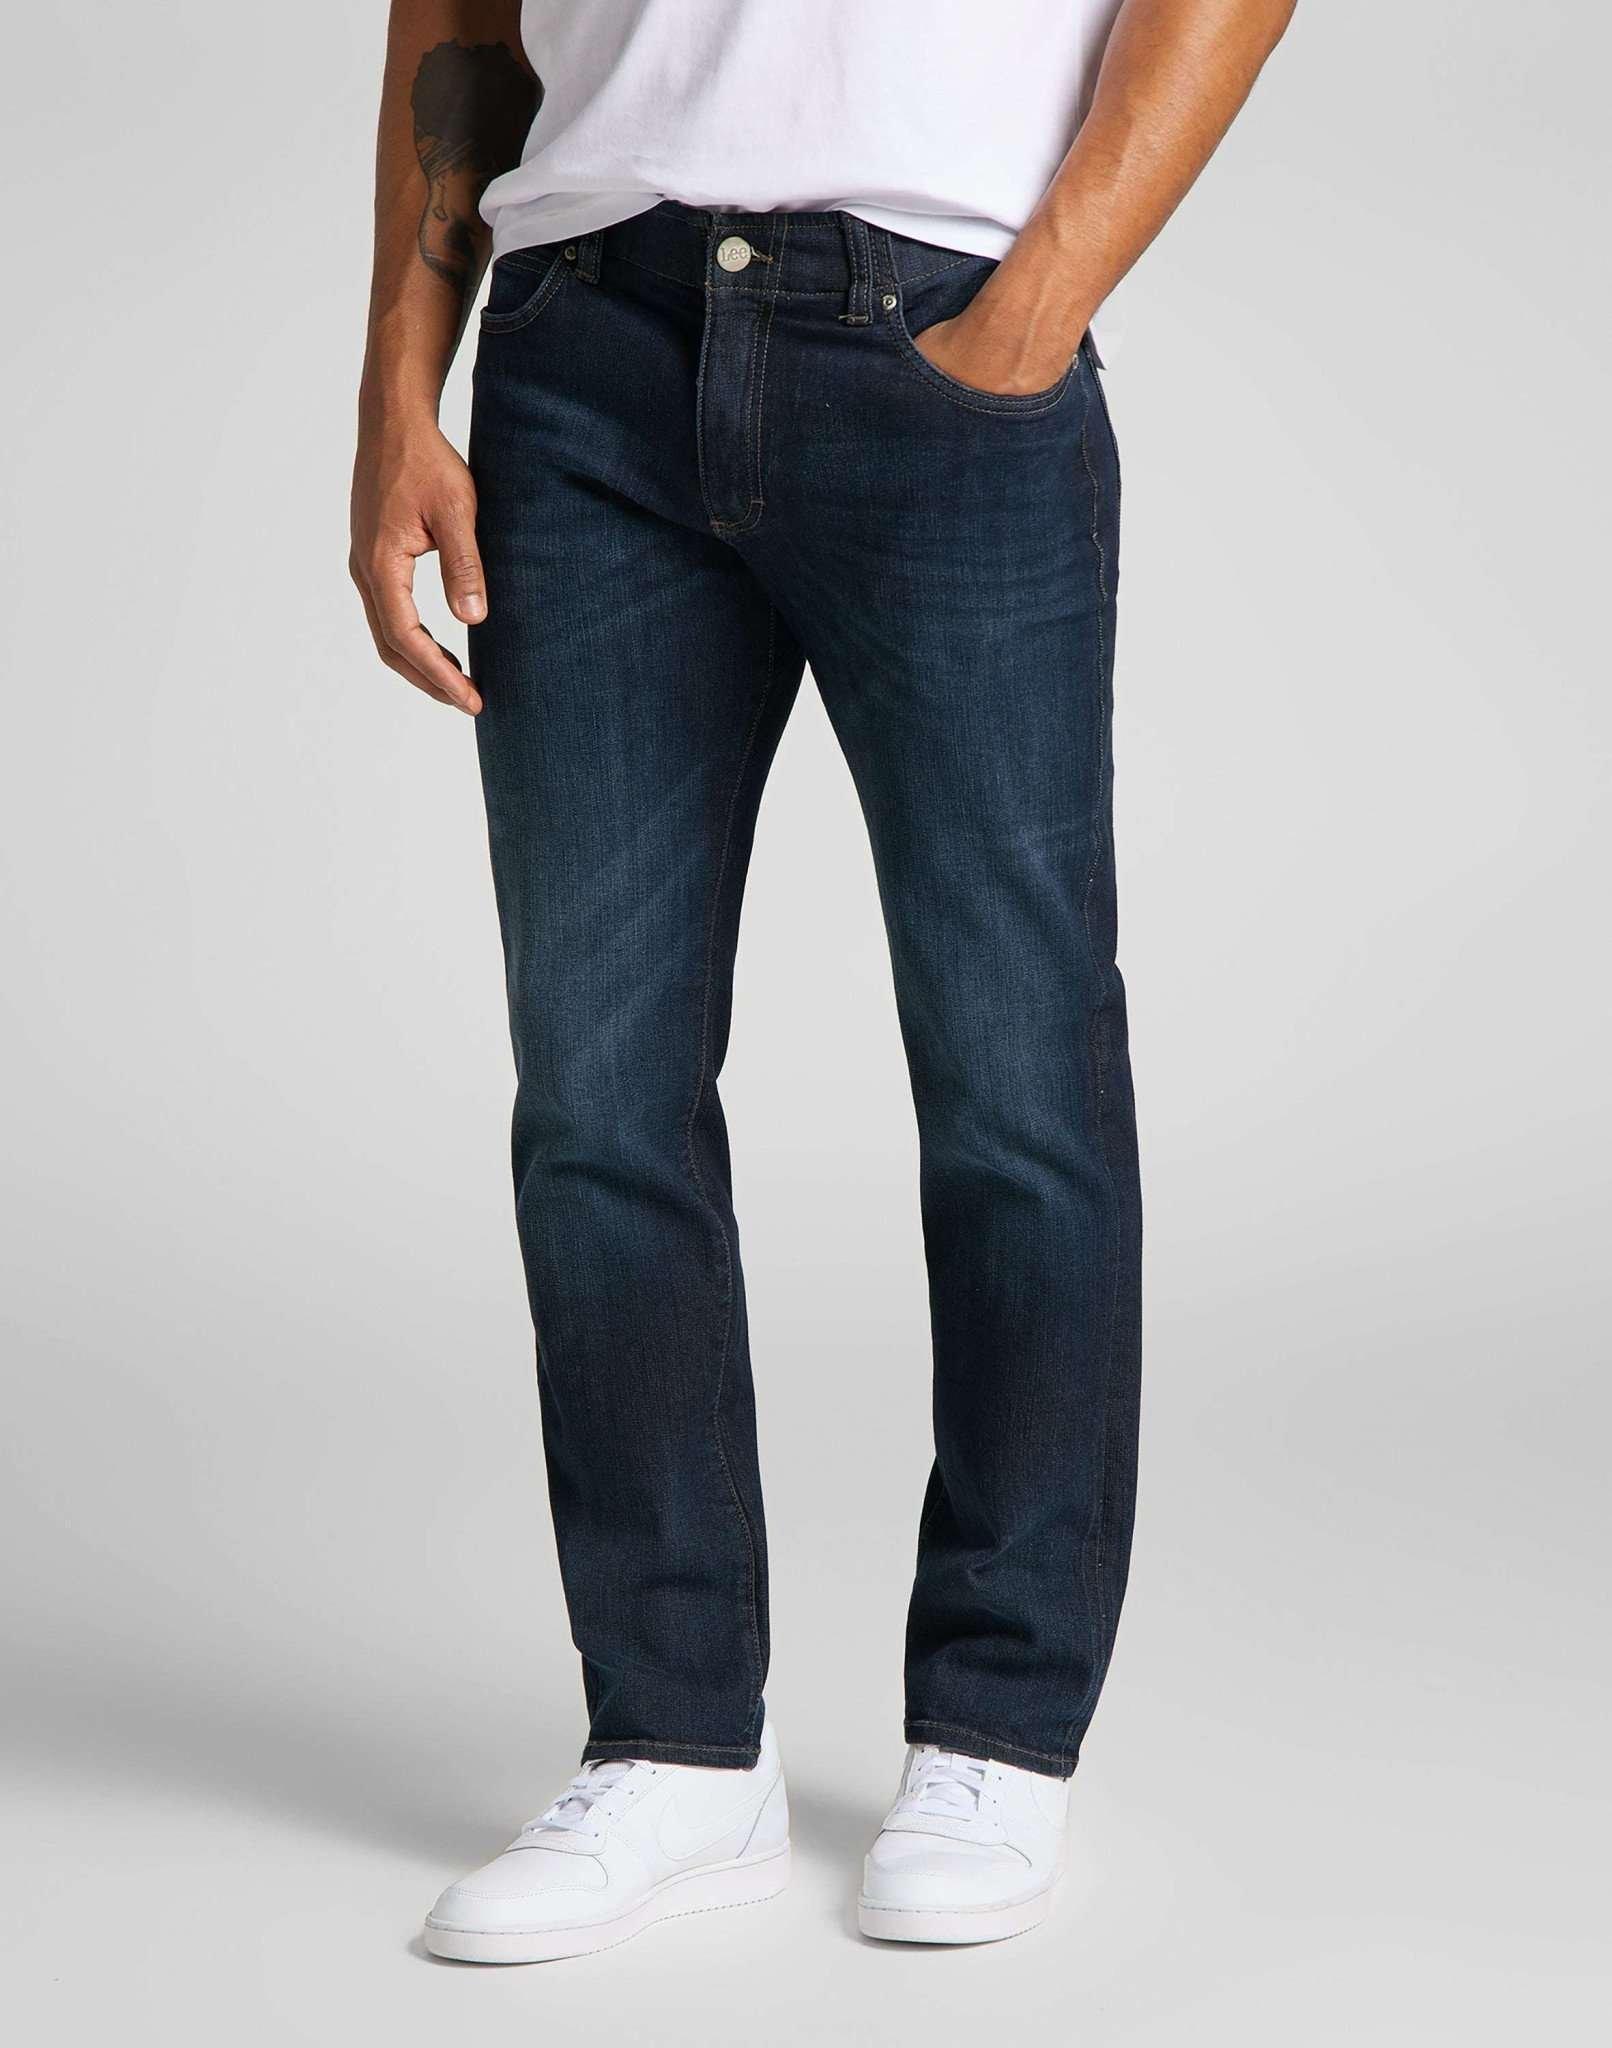 Jeans Straight Leg Xm Herren Blau Denim L34/W36 von Lee